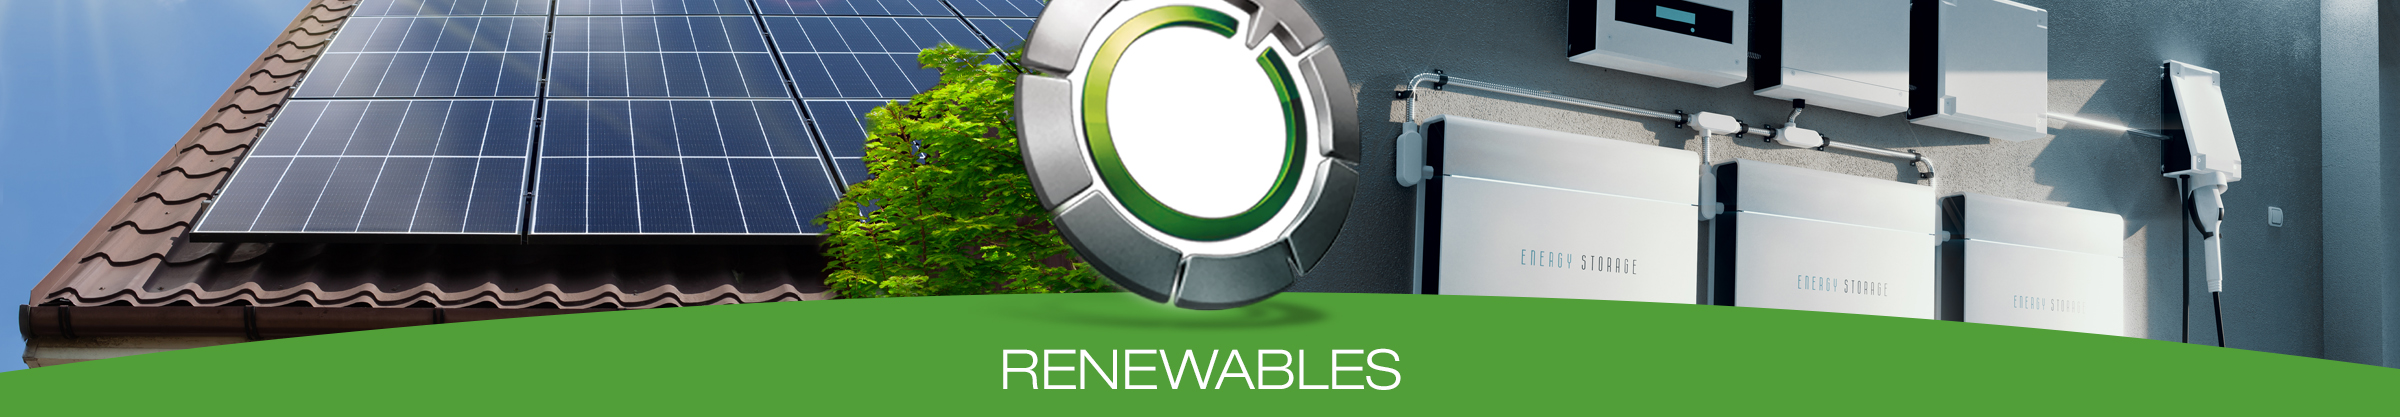 Definitive Renewables